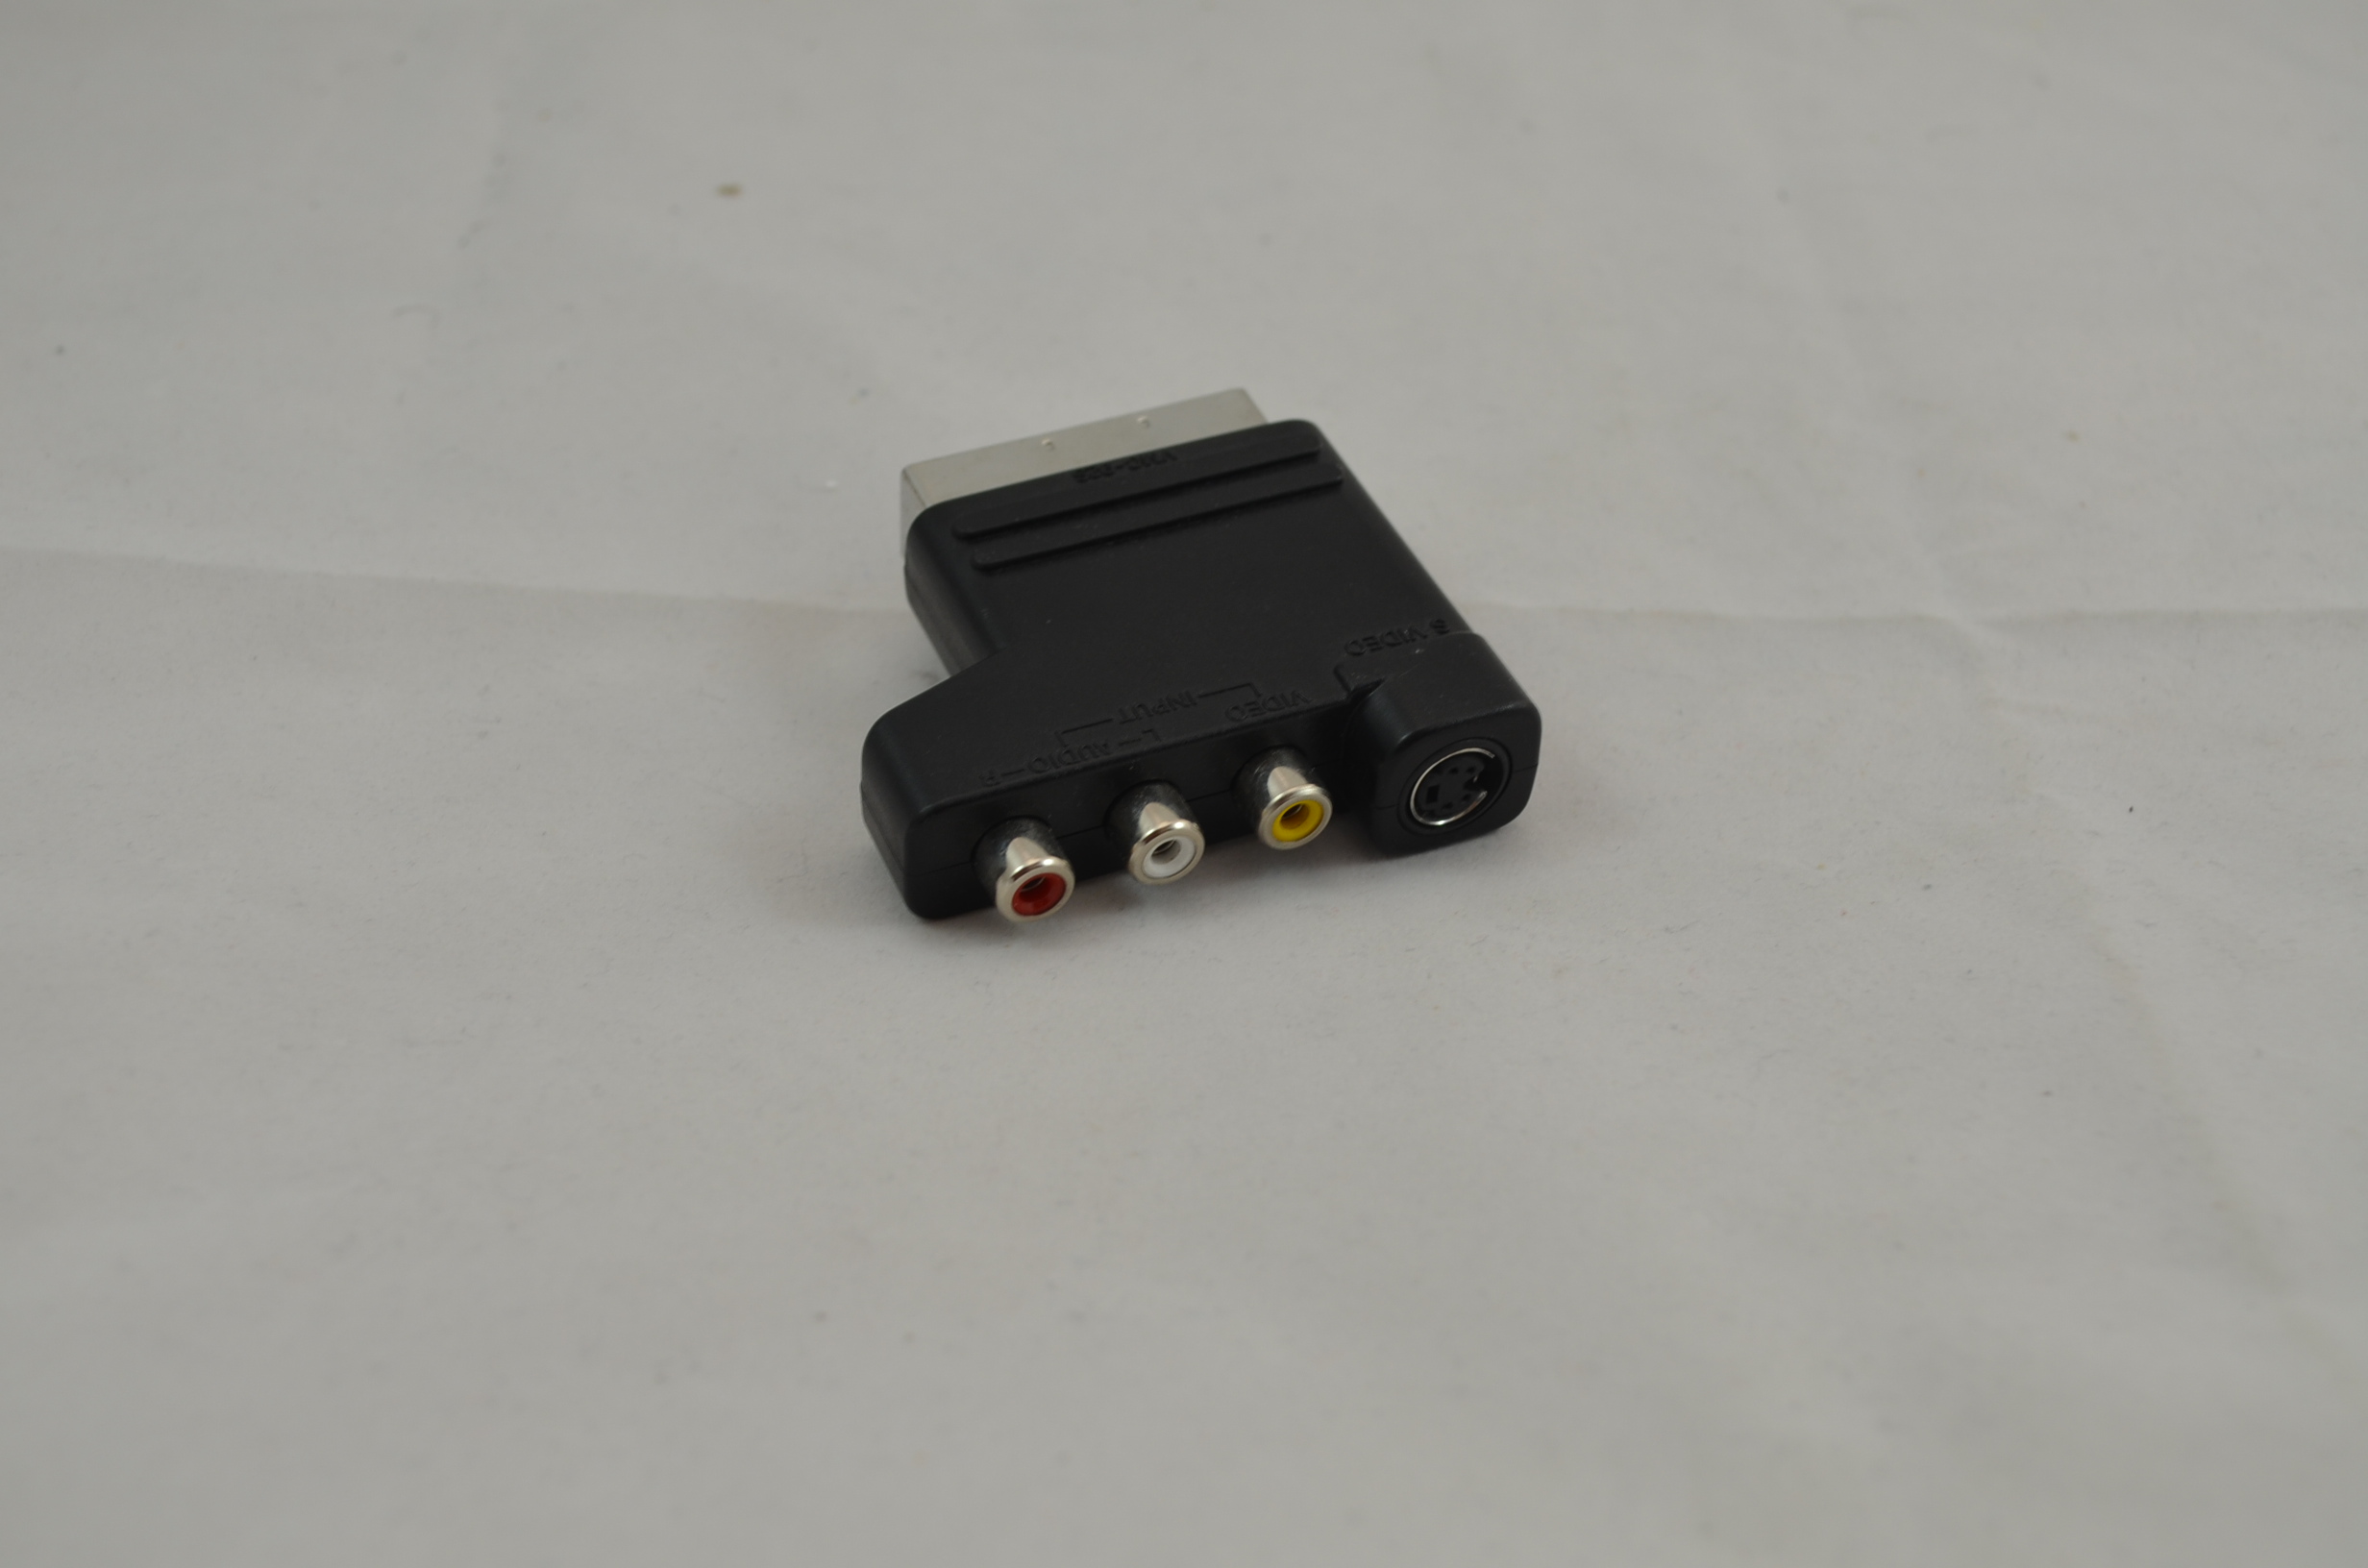 Produktbild von Cinch zu Scart Adapter für Nintendo NES